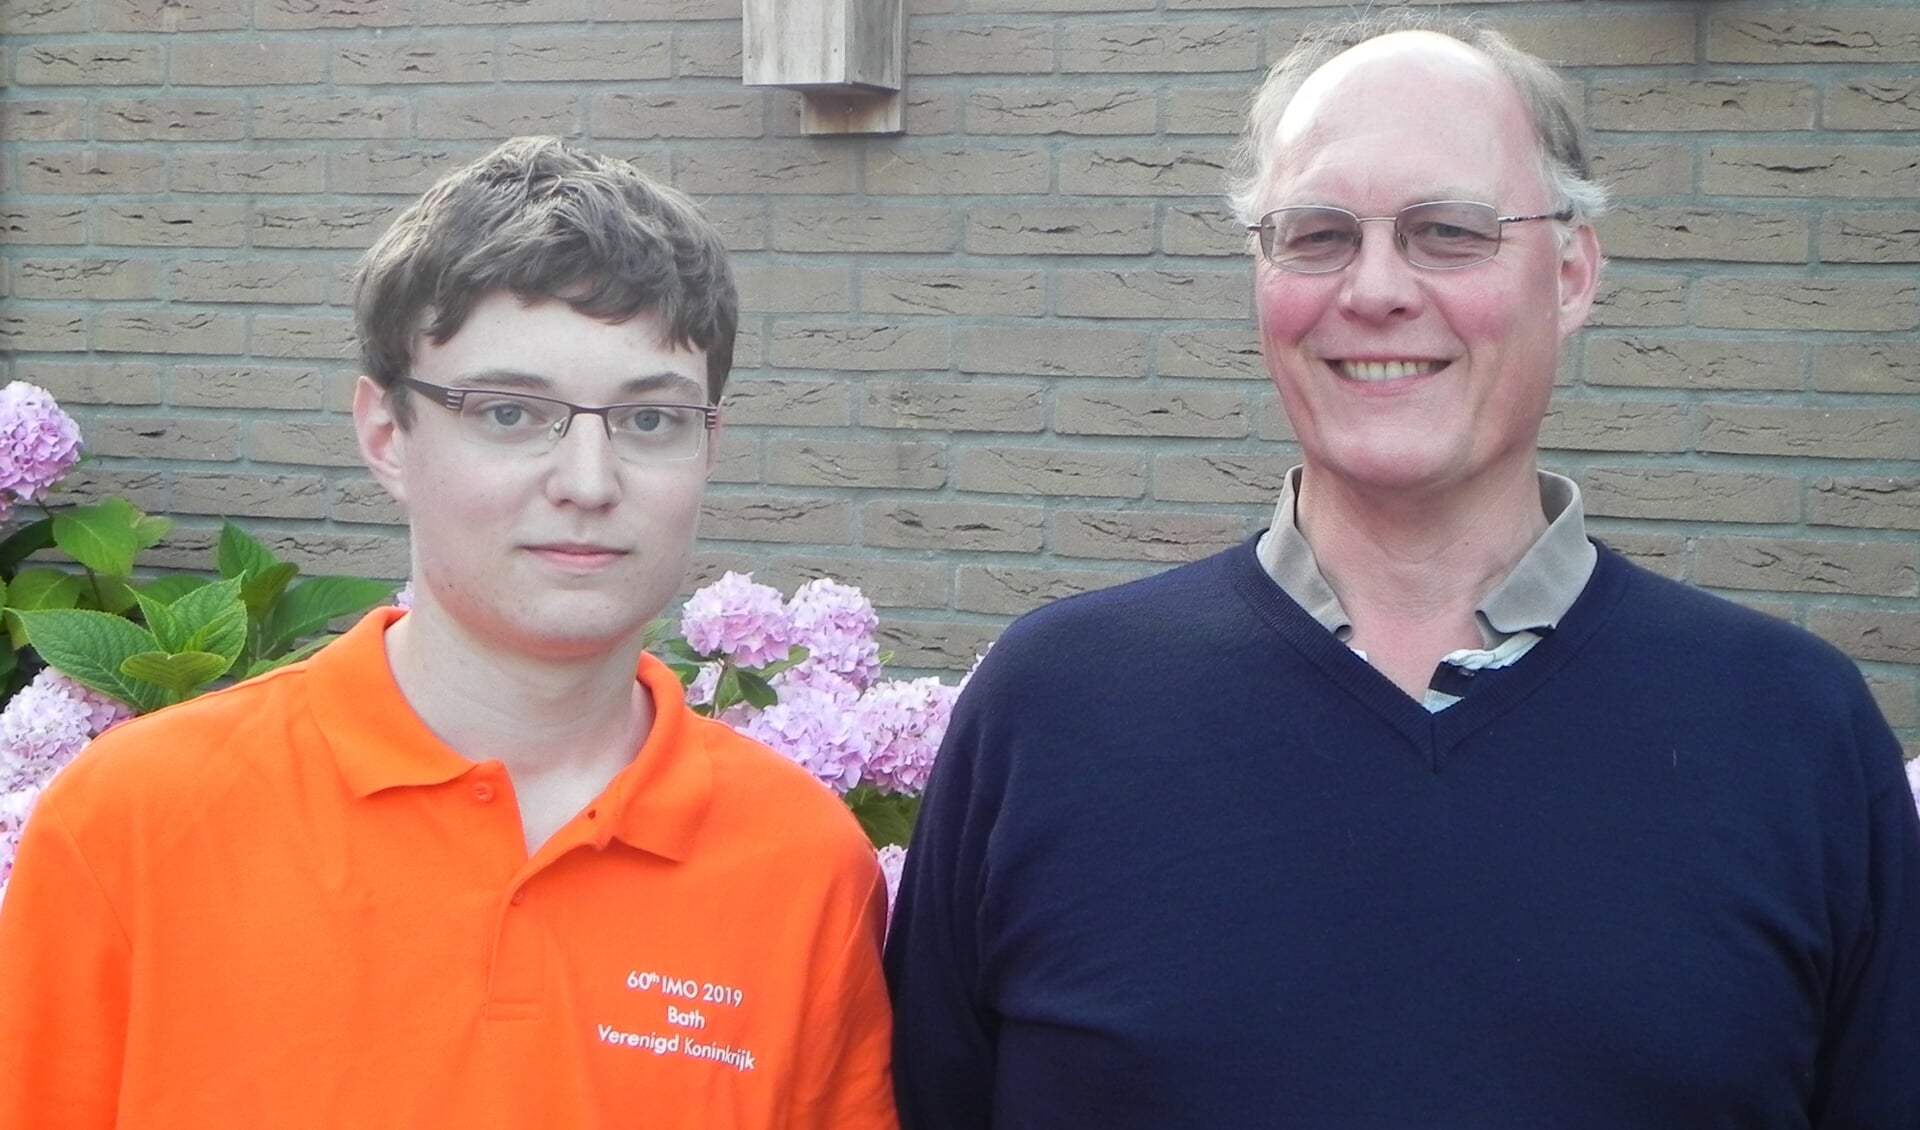 Jippe met zijn vader Han Hoogeveen.